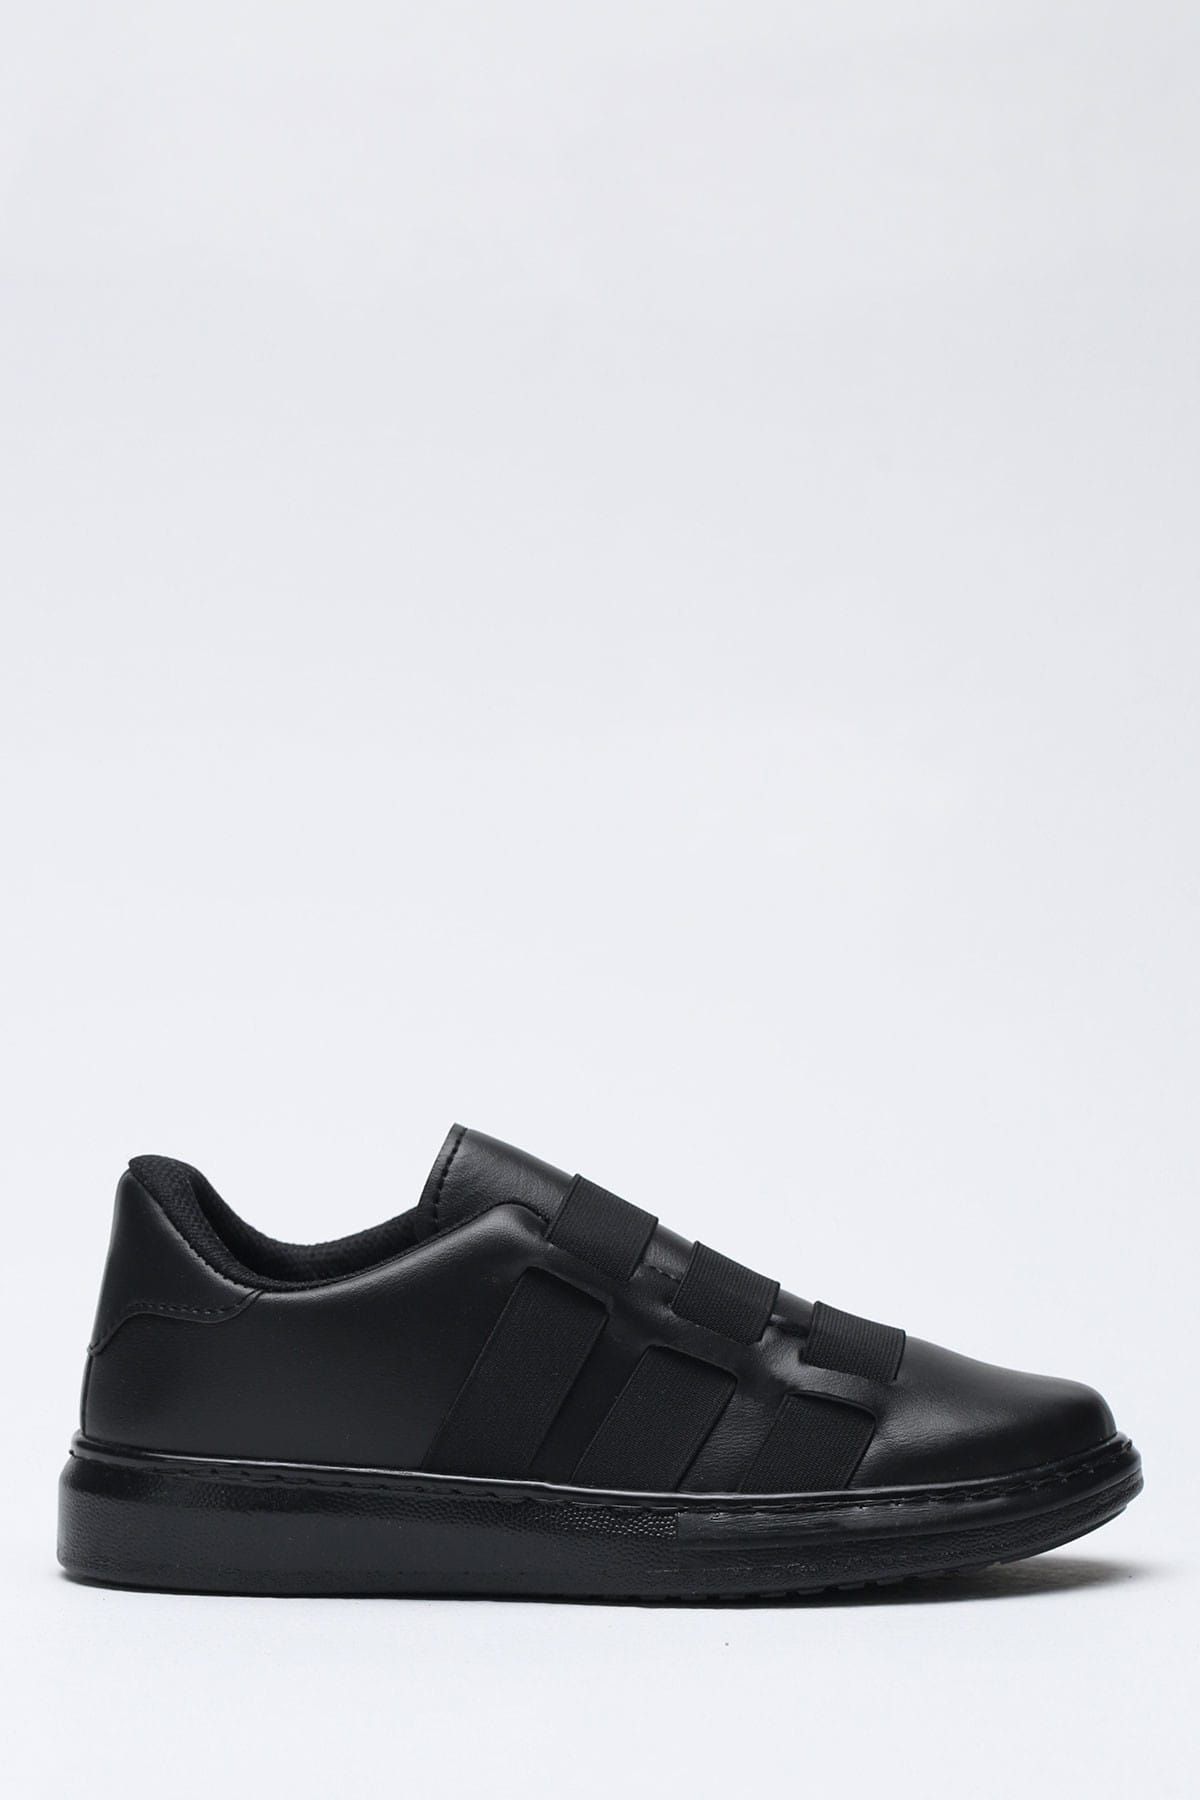 Ayakkabı Modası Siyah Kadın Spor Ayakkabı 1938-9-4210